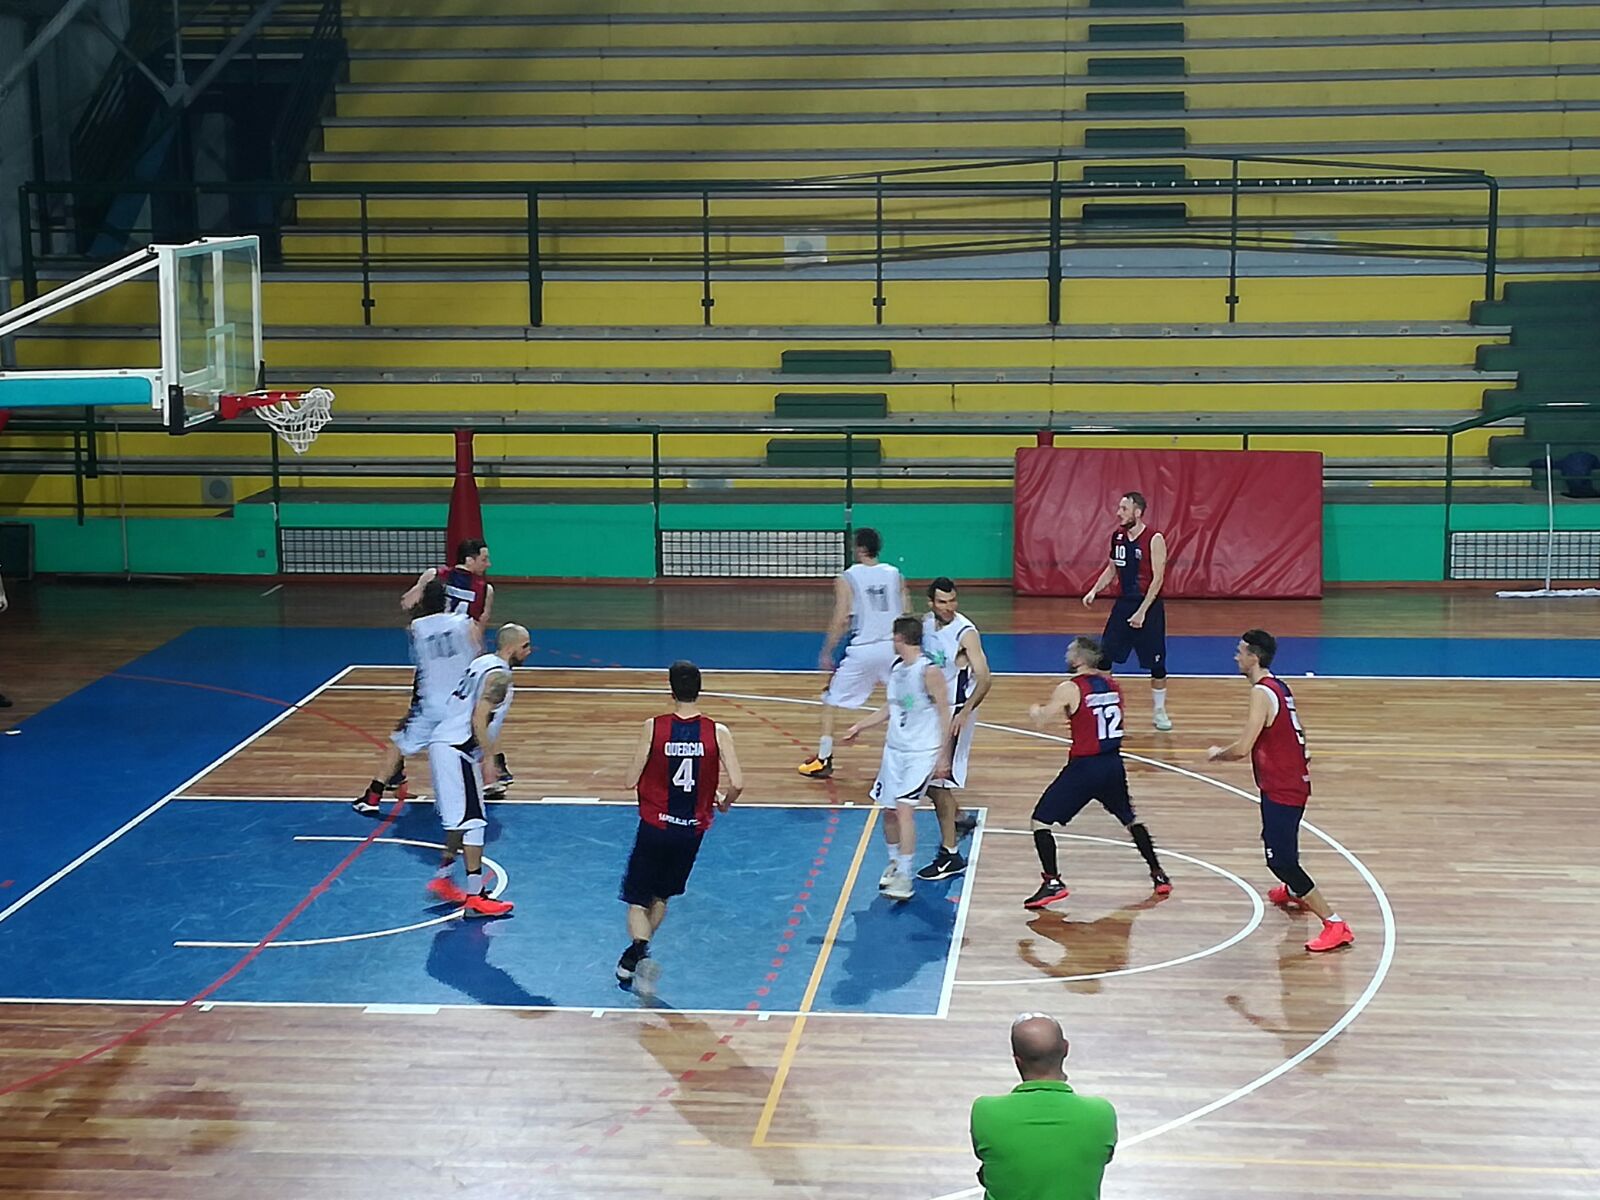 Raduno Nazionale Pallacanestro Under 18 e Torneo Internazionale di Basket con pari rappresentative di Lituania, Turchia e Olanda